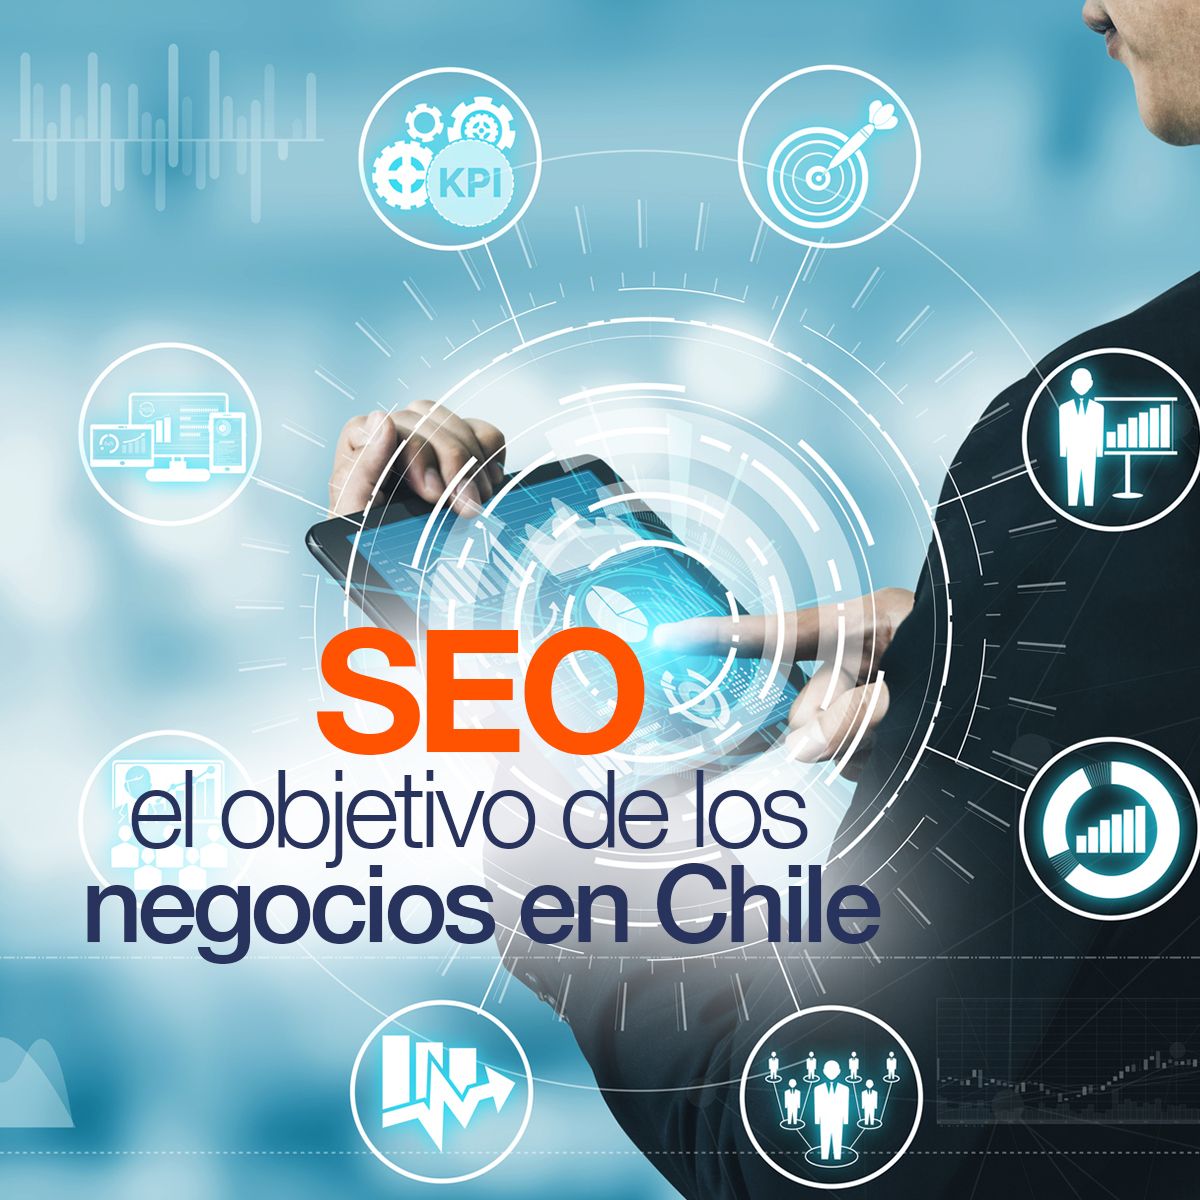 SEO el objetivo de los negocios en Chile